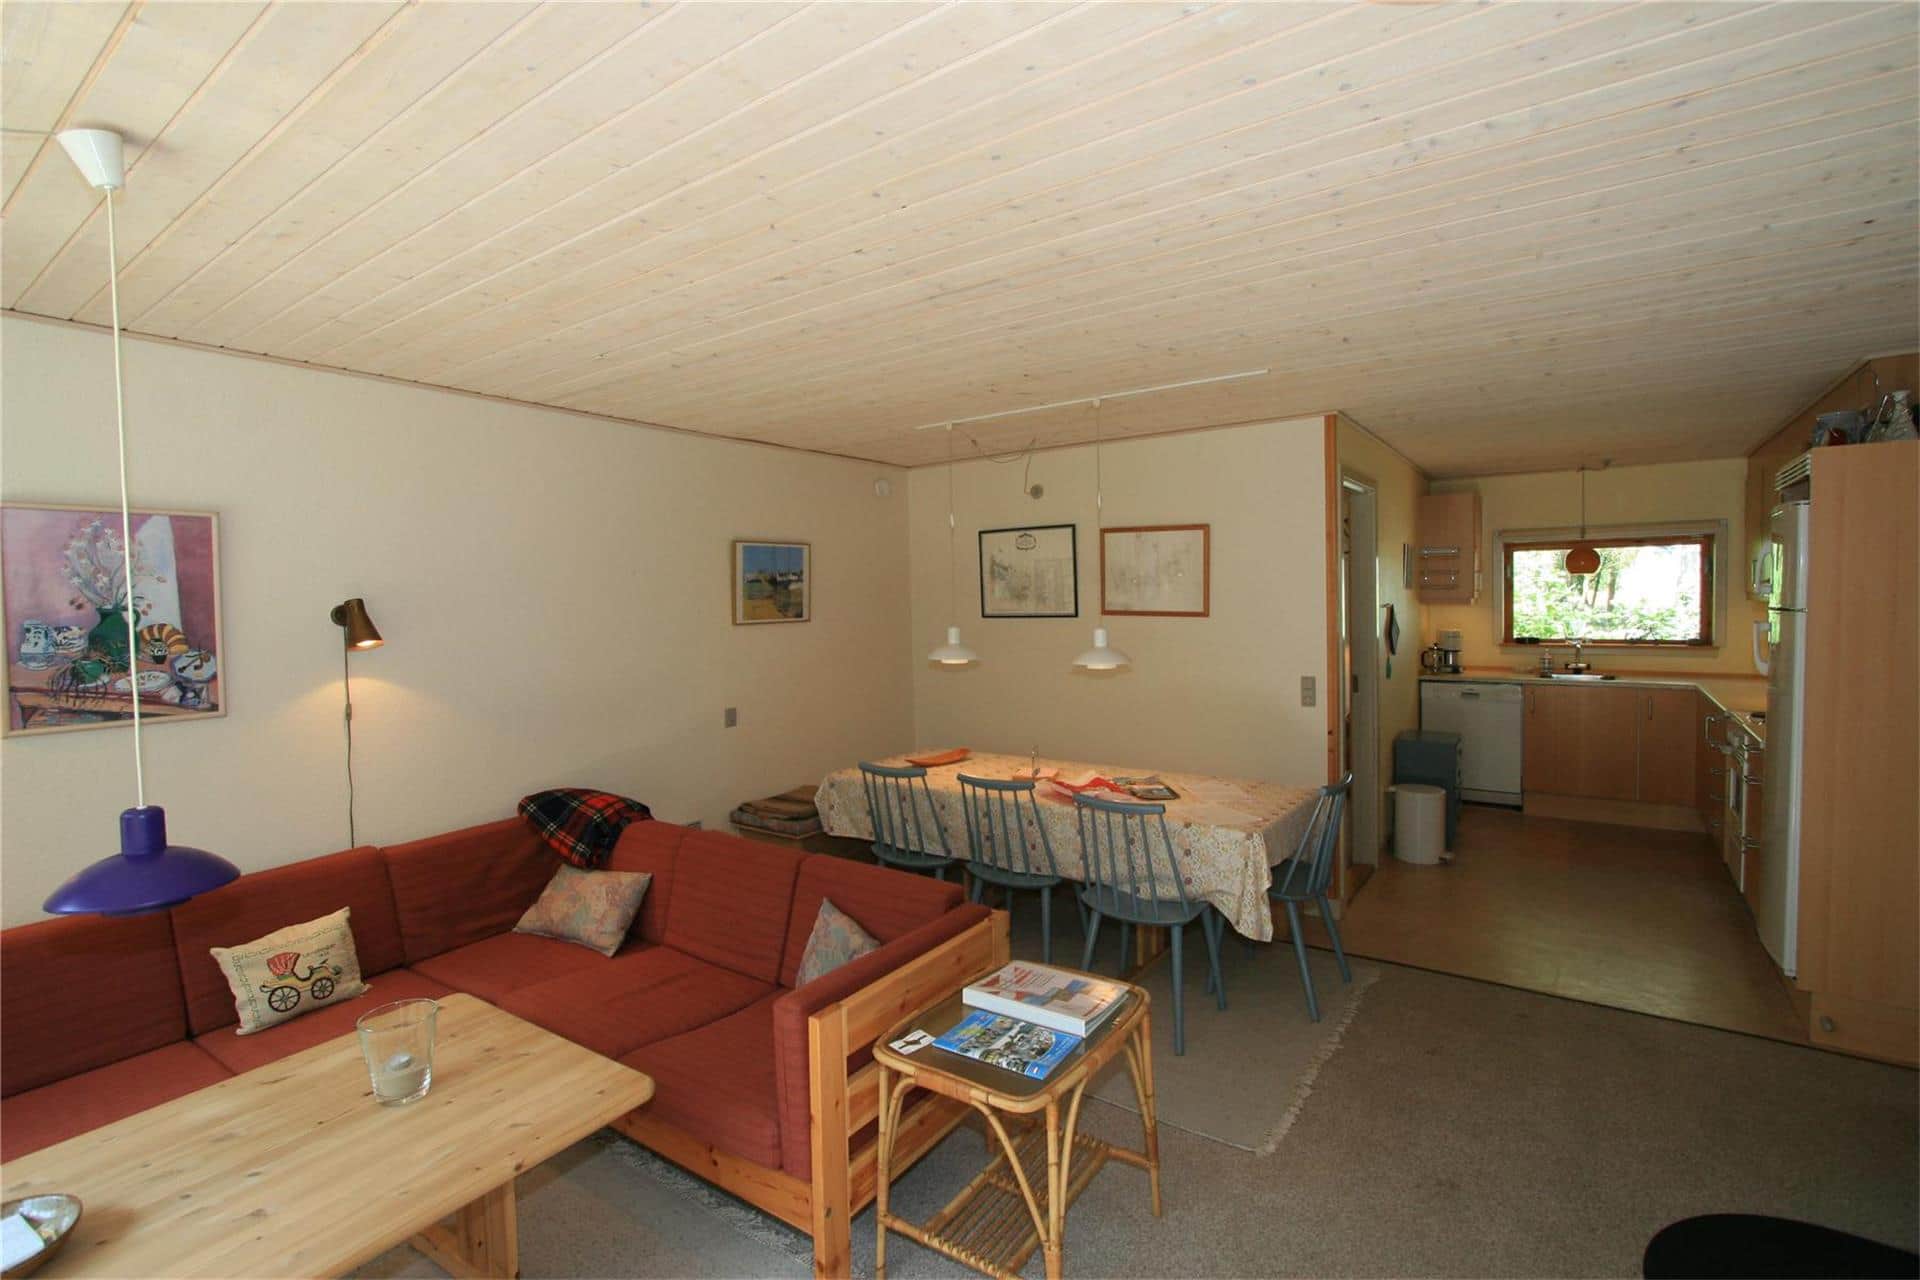 Wohnzimmer 1 Bild 3-10 Ferienhaus 4716, Boderne 95, DK - 3720 Aakirkeby